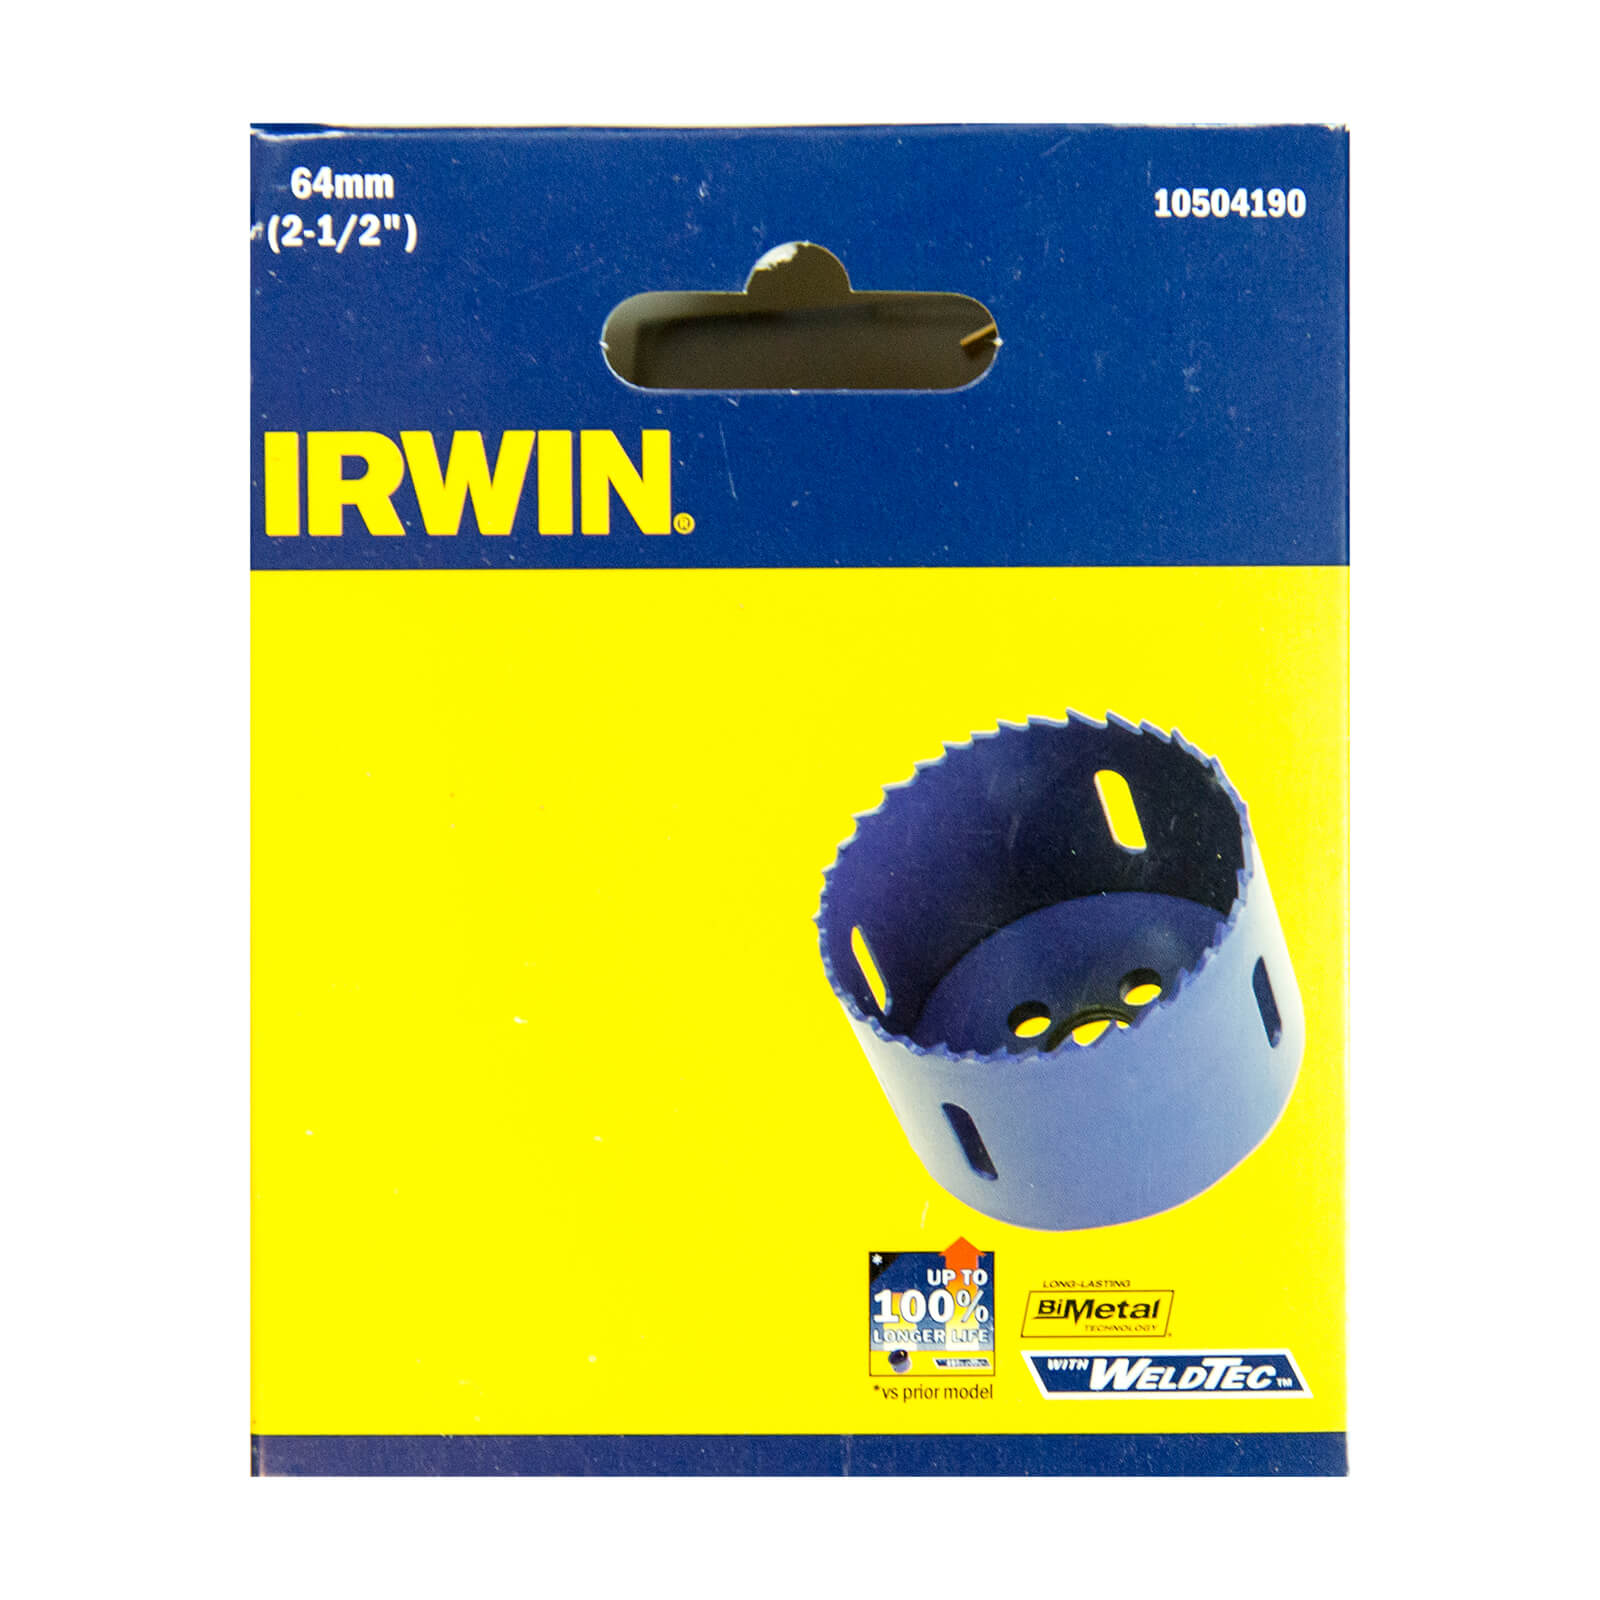 IRWIN Bi-Metal Hole Saw - 64mm